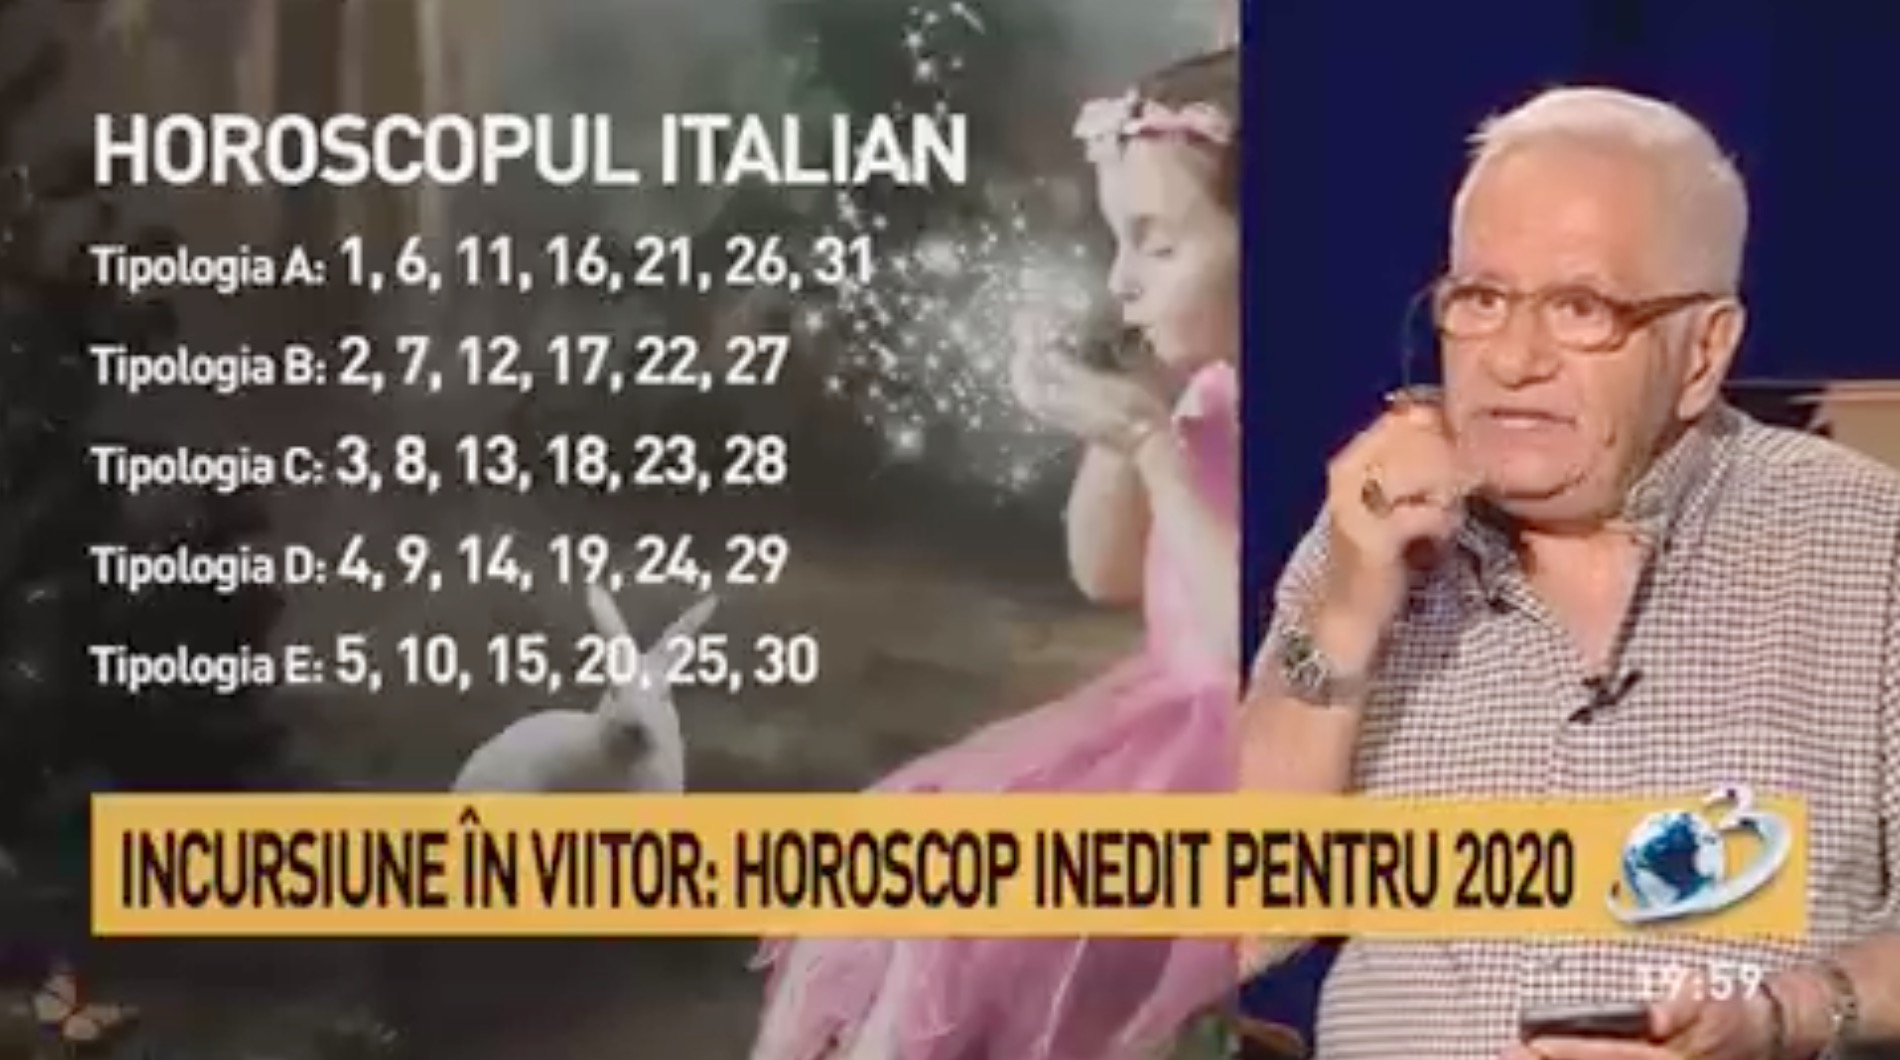 Mihai Voropchievici Horoscop 2020 - Primele previziuni. Horoscop italian